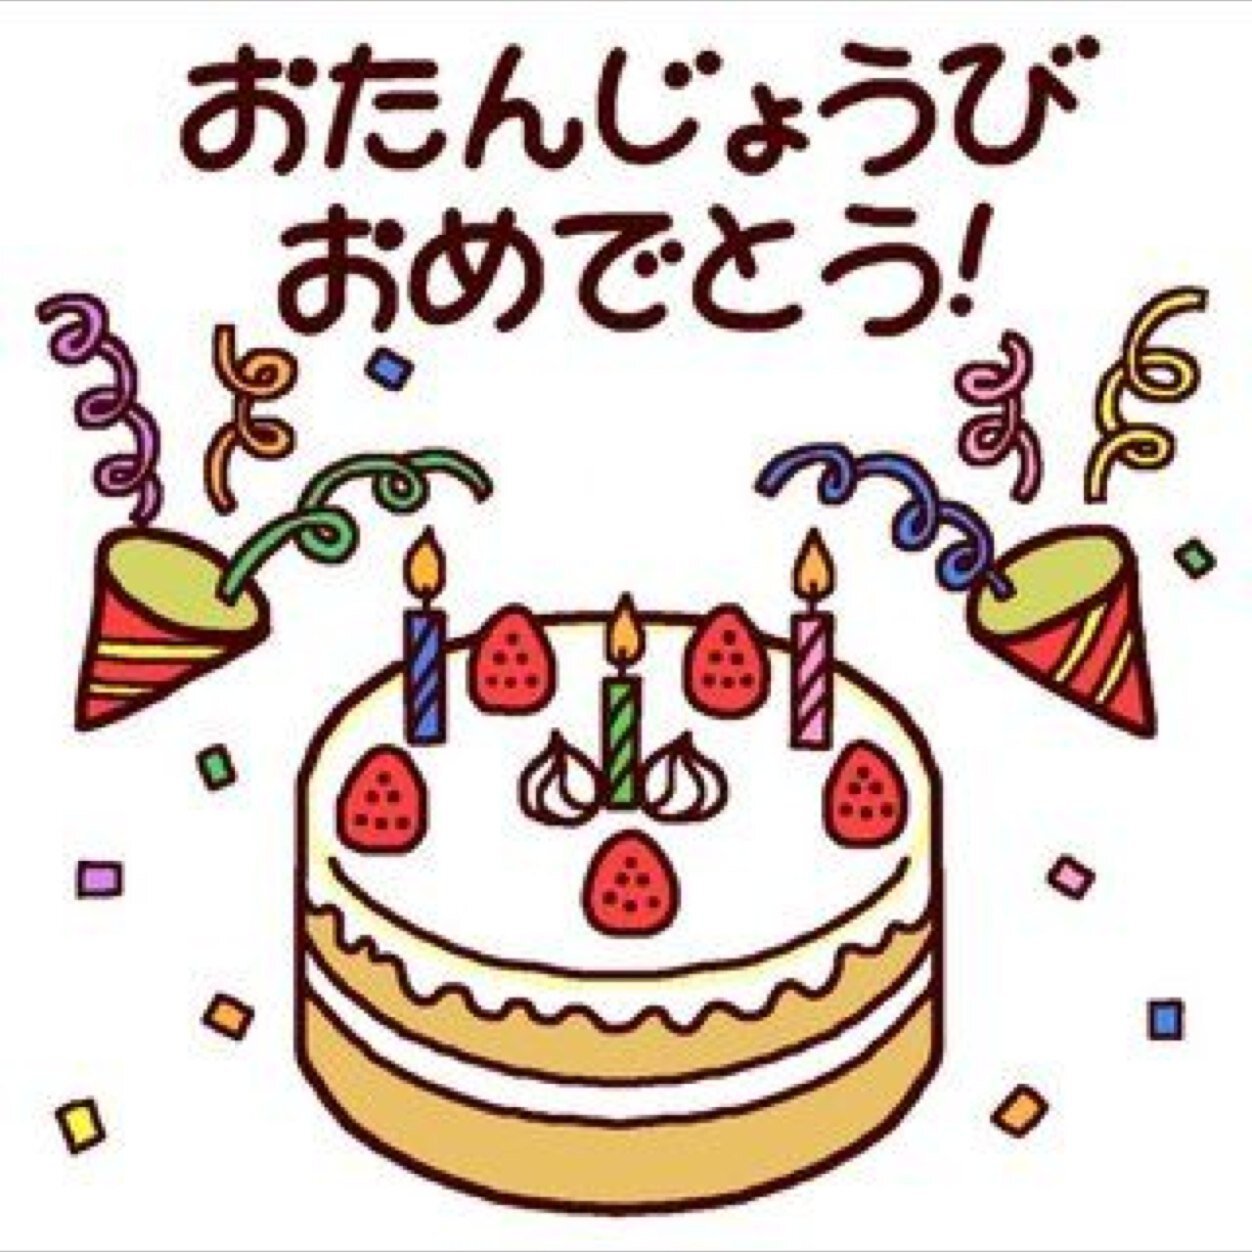 Поздравить с днем рождения перевод. С днем рождения на японском. Японское поздравление с днем рождения. Японские открытки с днем рождения. С днем рождения по яойски.